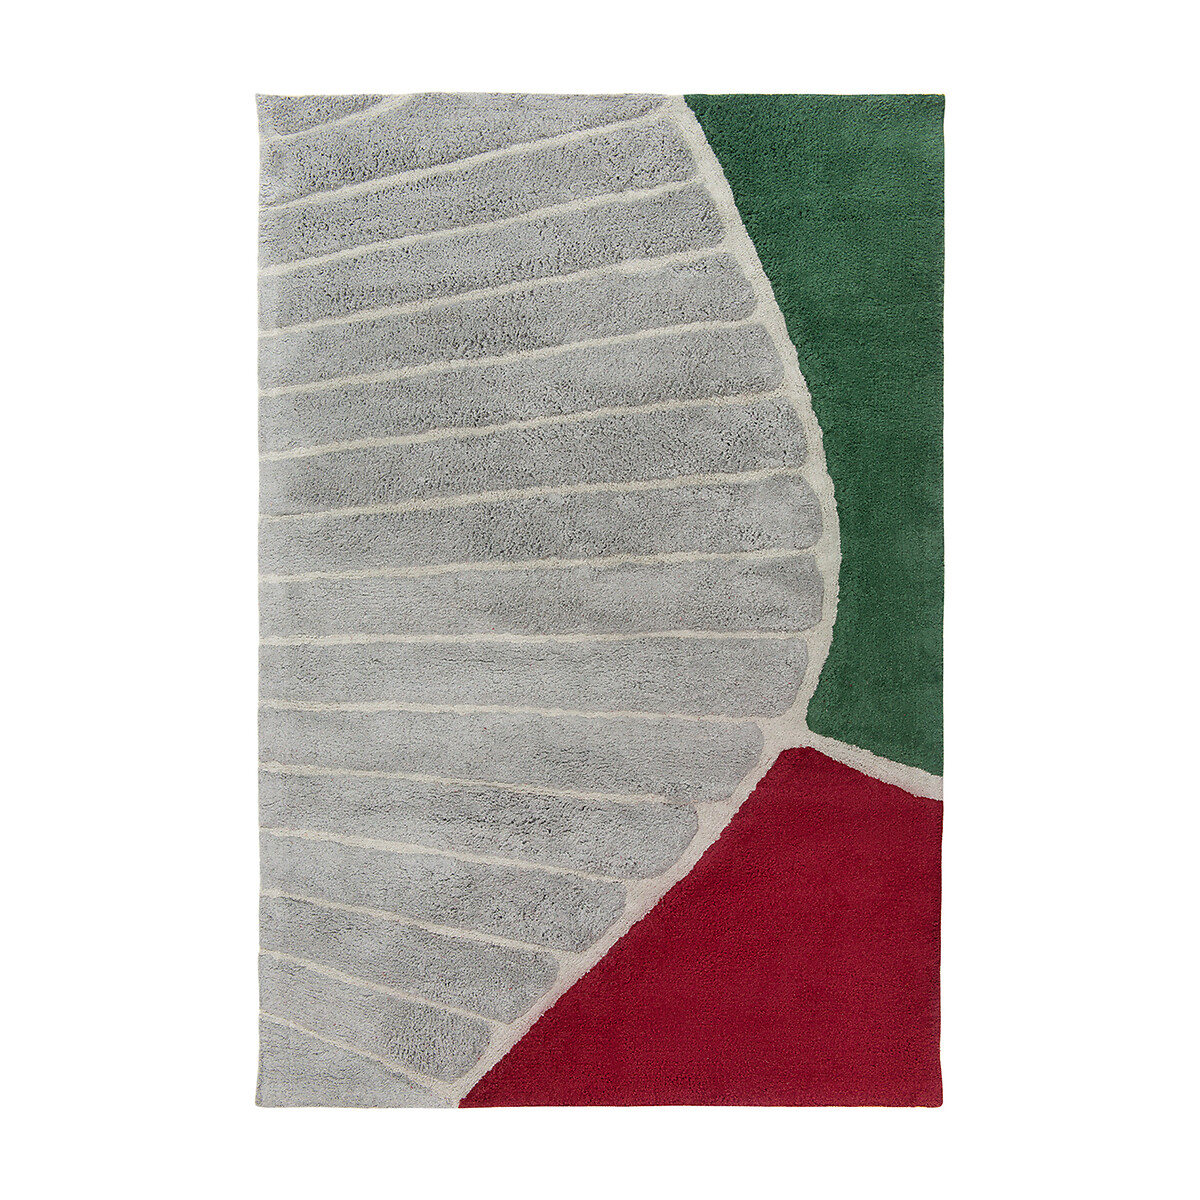 Ковер Из хлопка с рисунком Tea plantation 120 x 180 см разноцветный LaRedoute, размер 120 x 180 см - фото 1